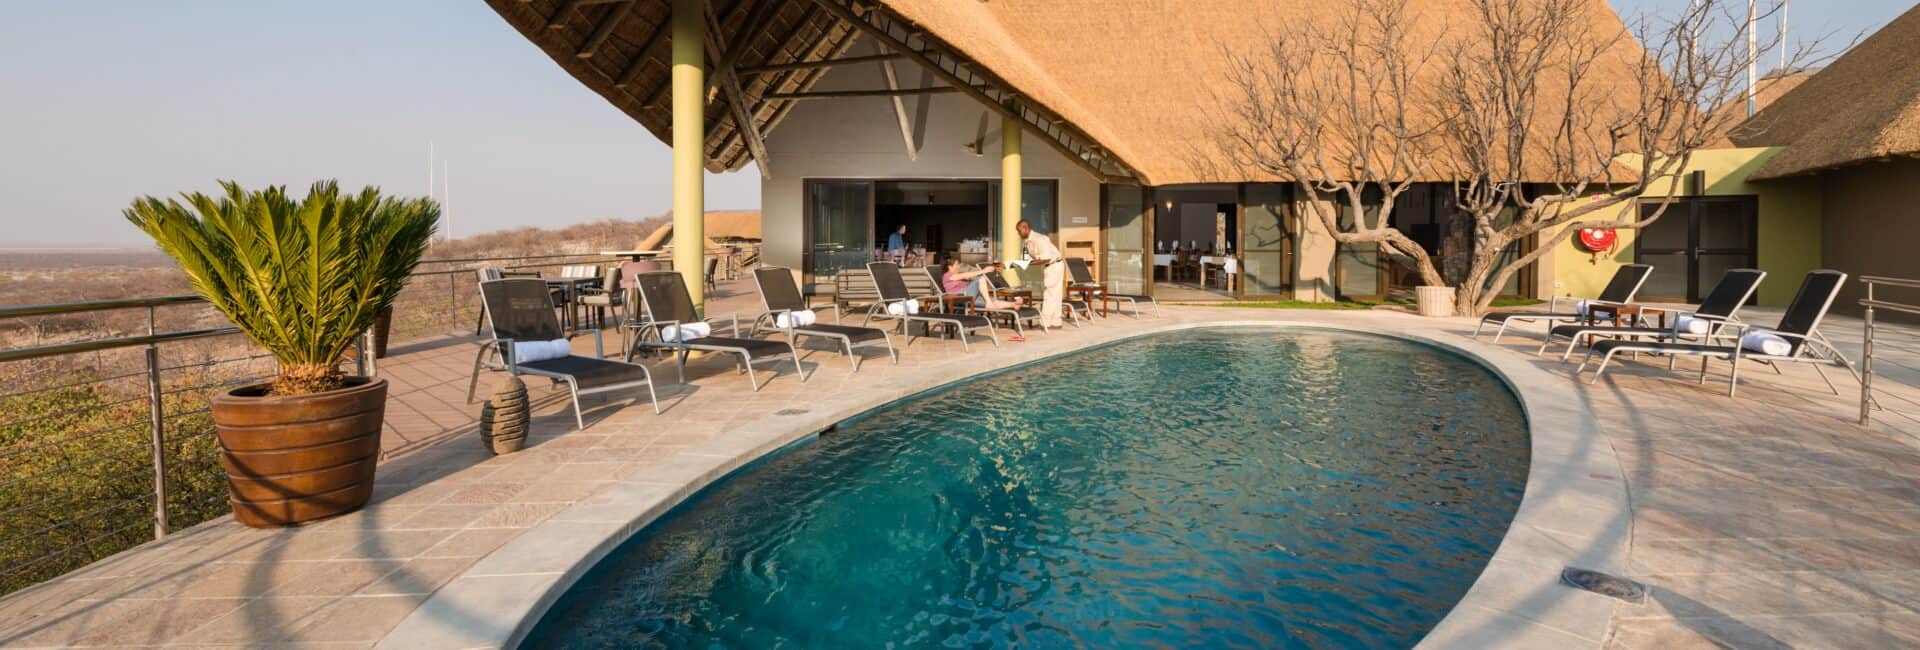 Safarihoek - Swimming Pool